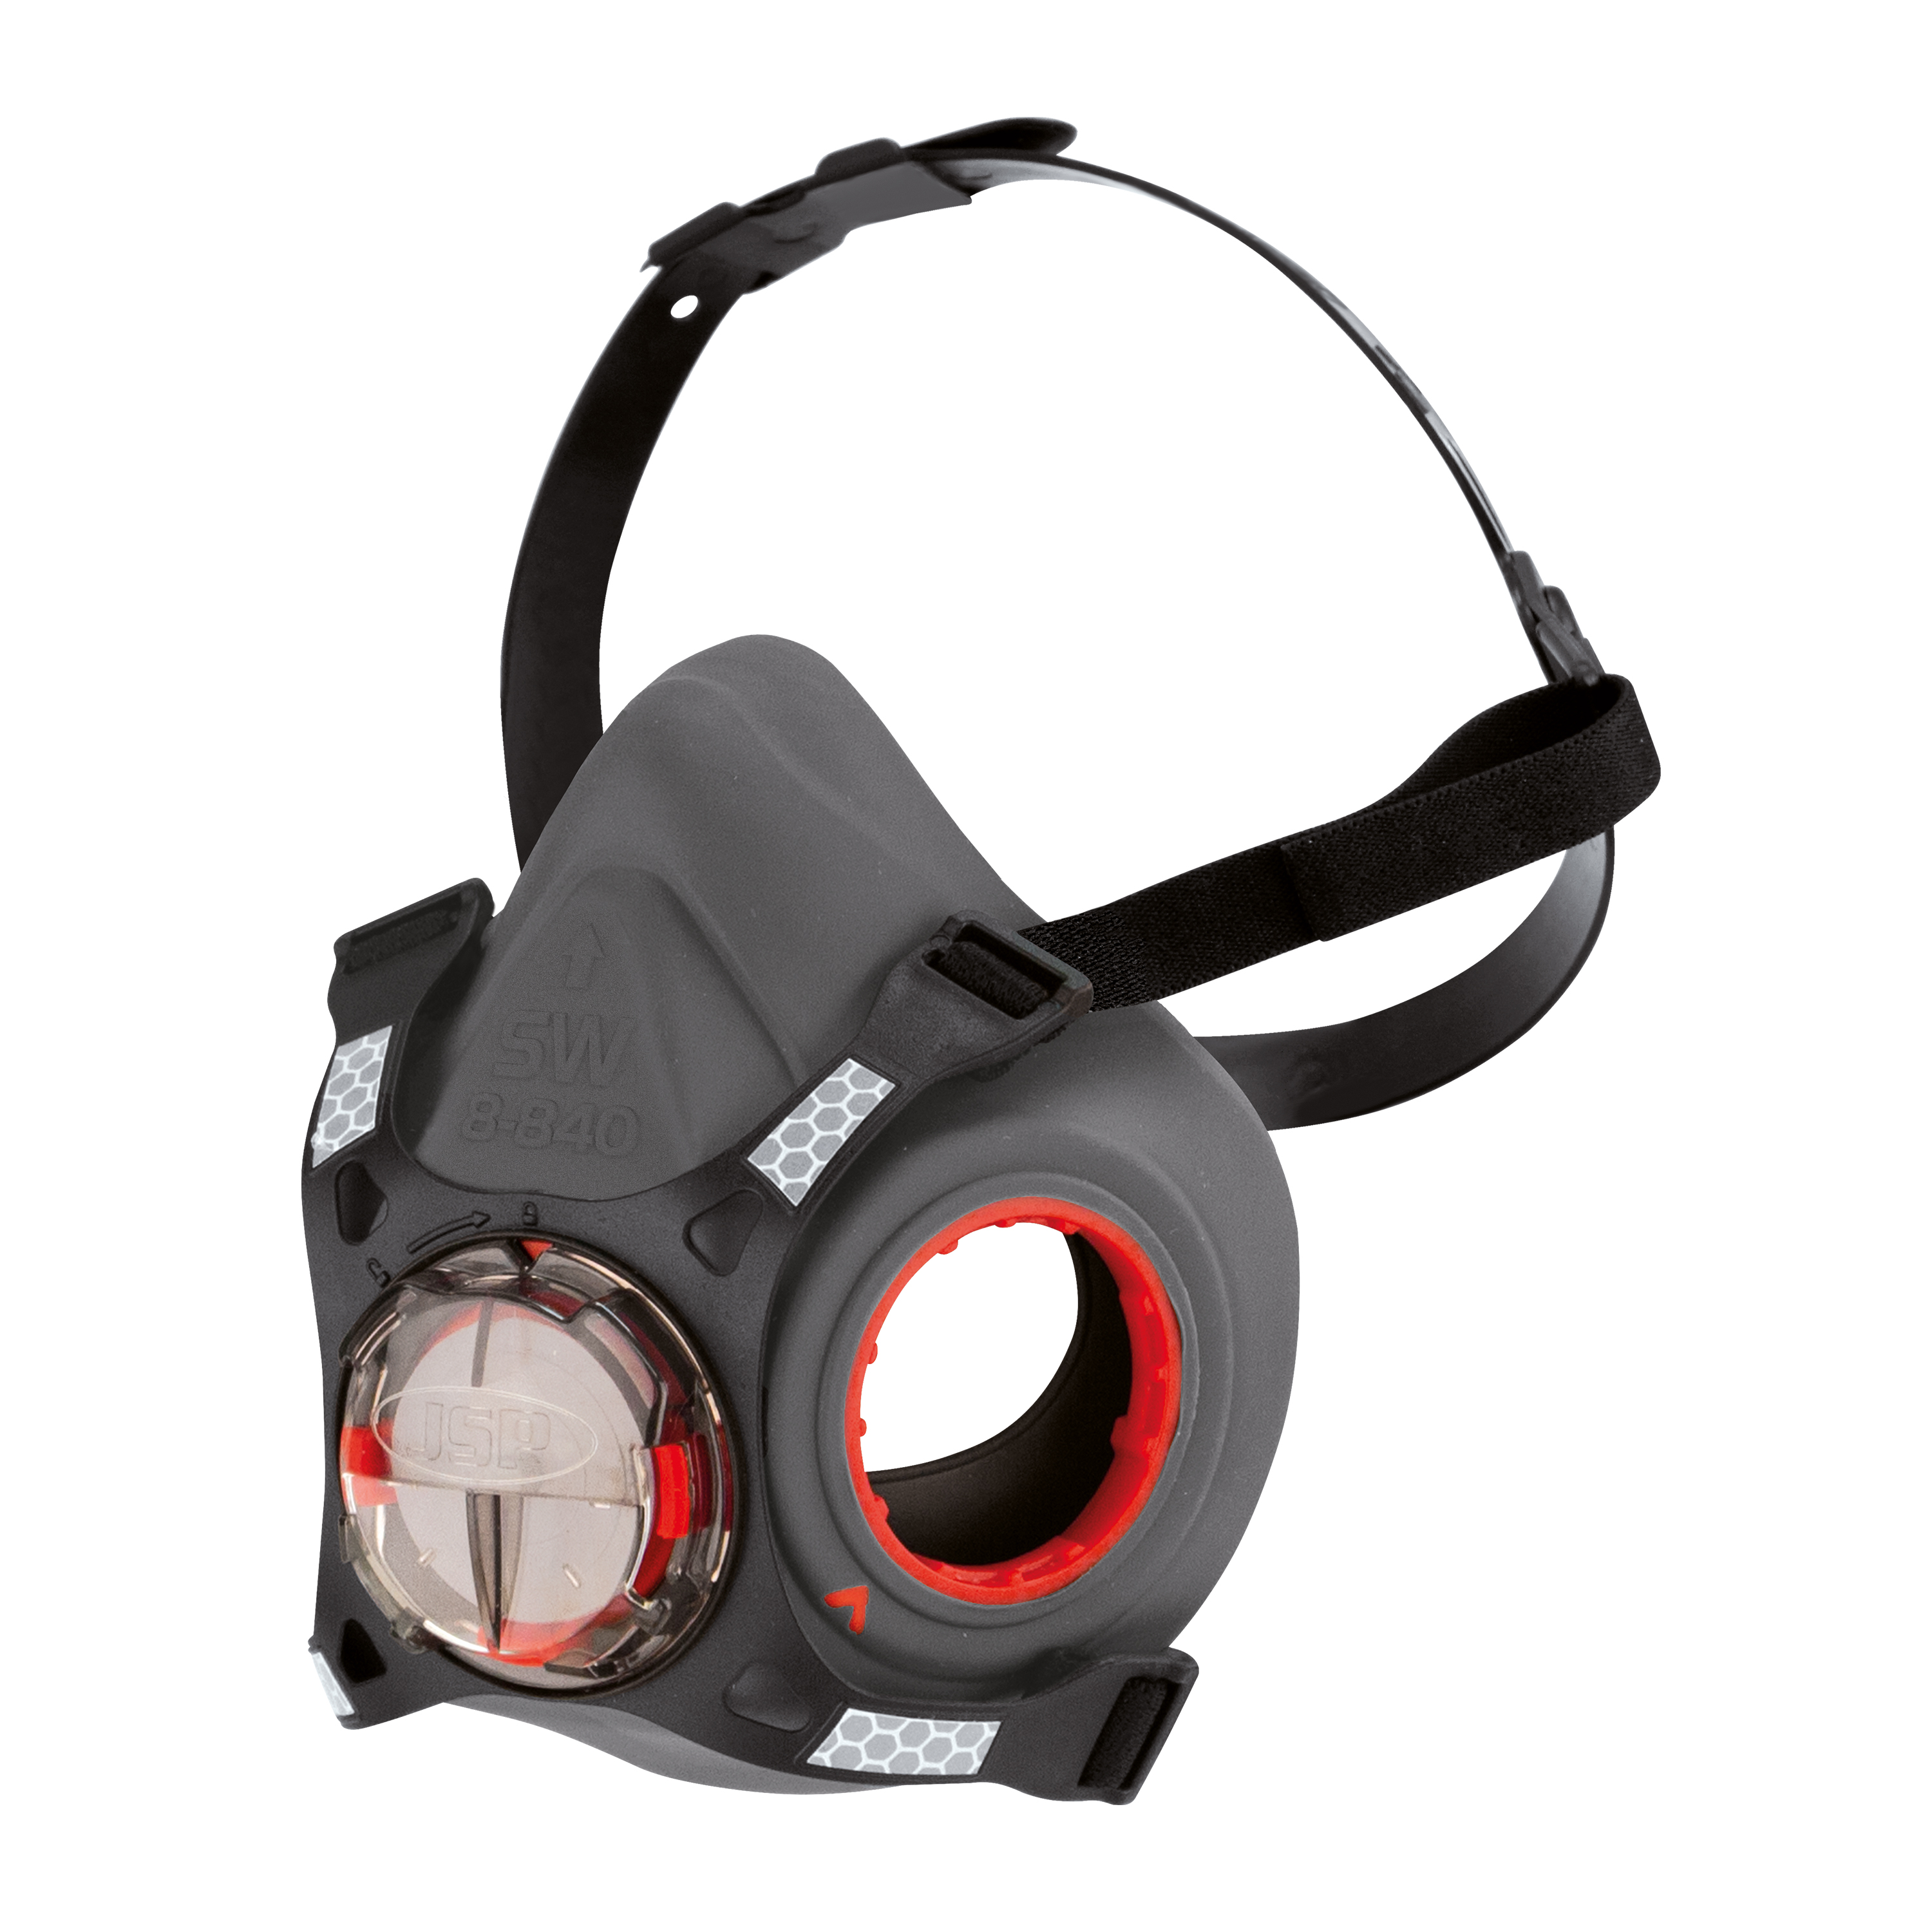 Masque anti-poussière avec filtre P3 : JSP Filterspec Pro Filter